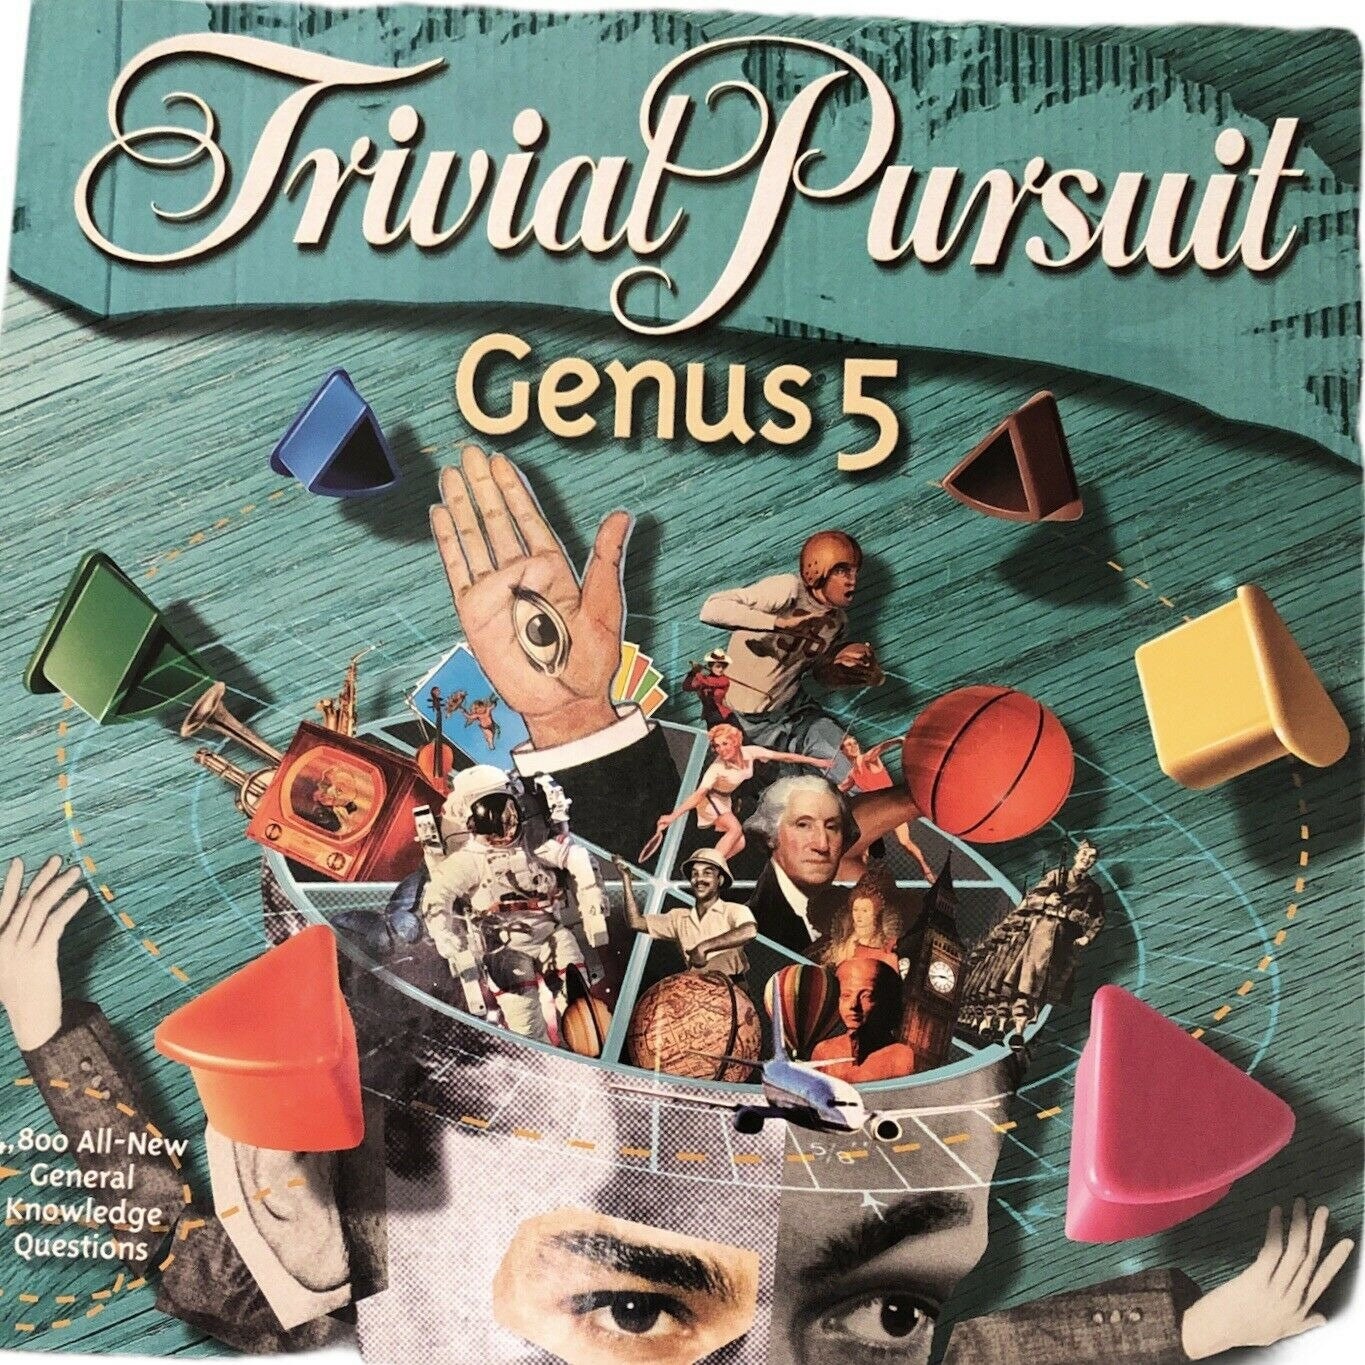 Questions Trivial Pursuit - Trivial Pursuit